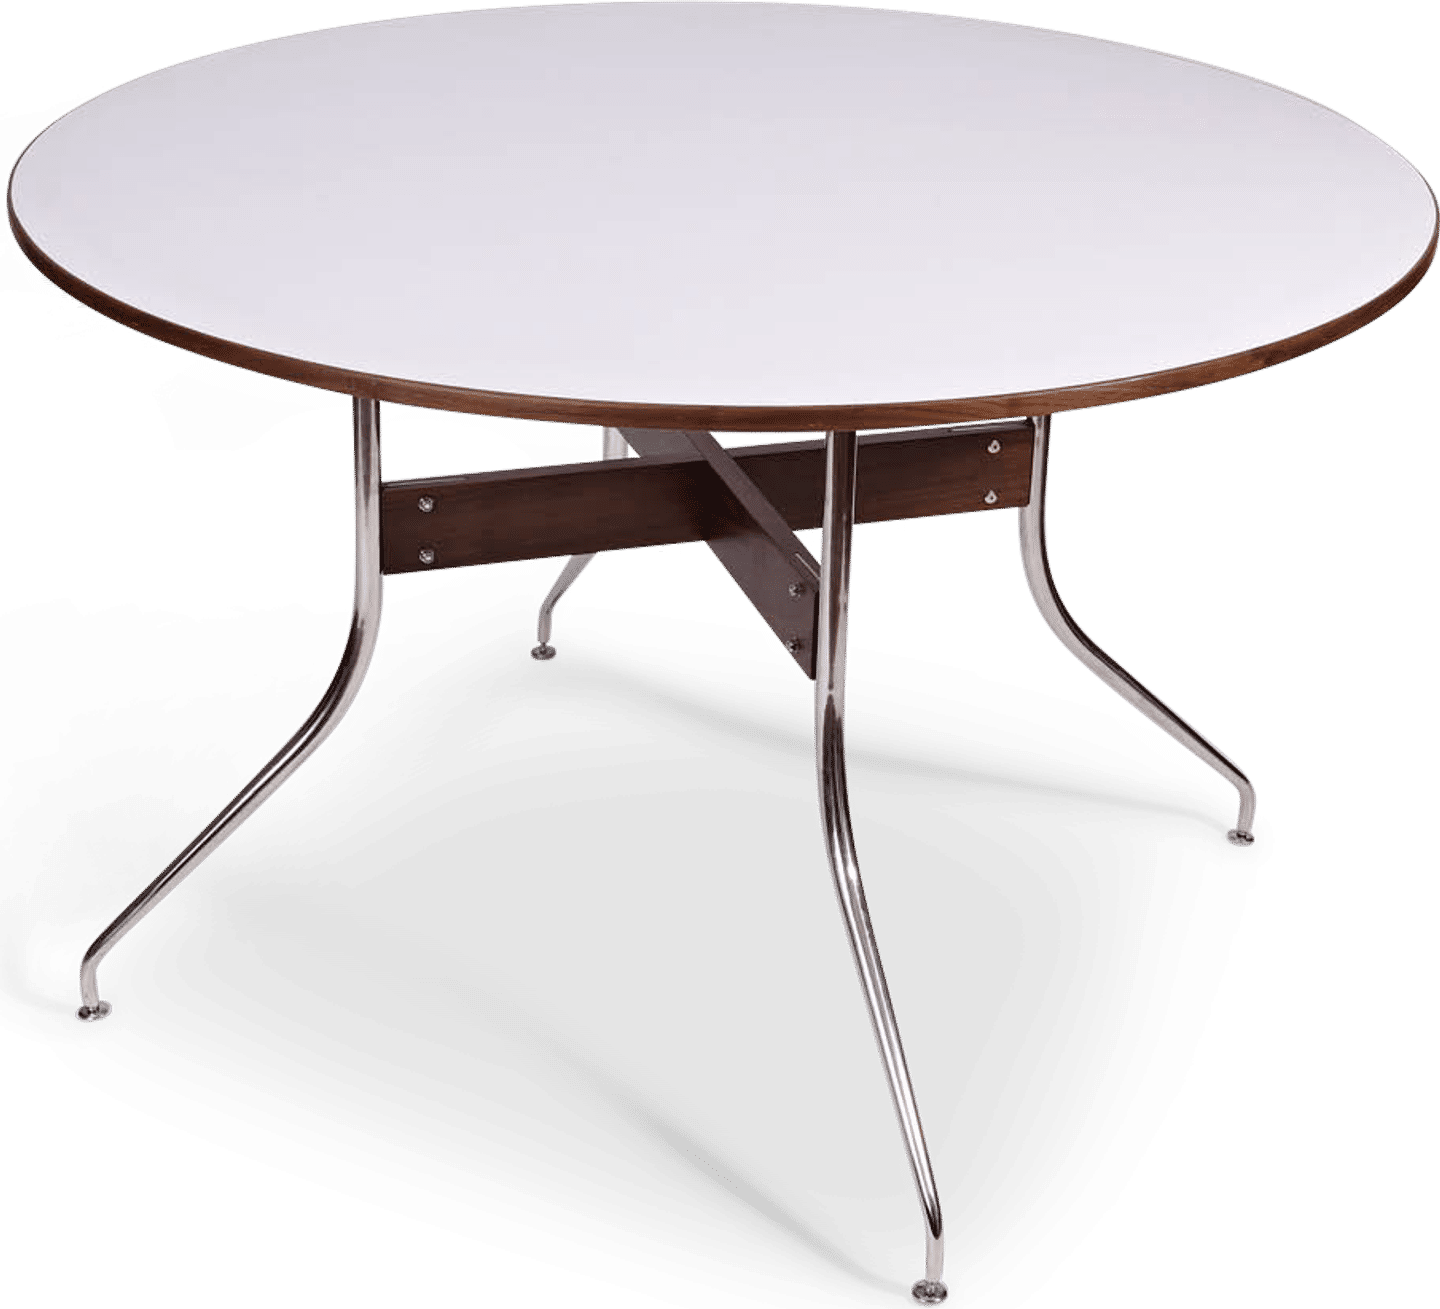 Table de salle à manger ronde à pieds mobiles White image.